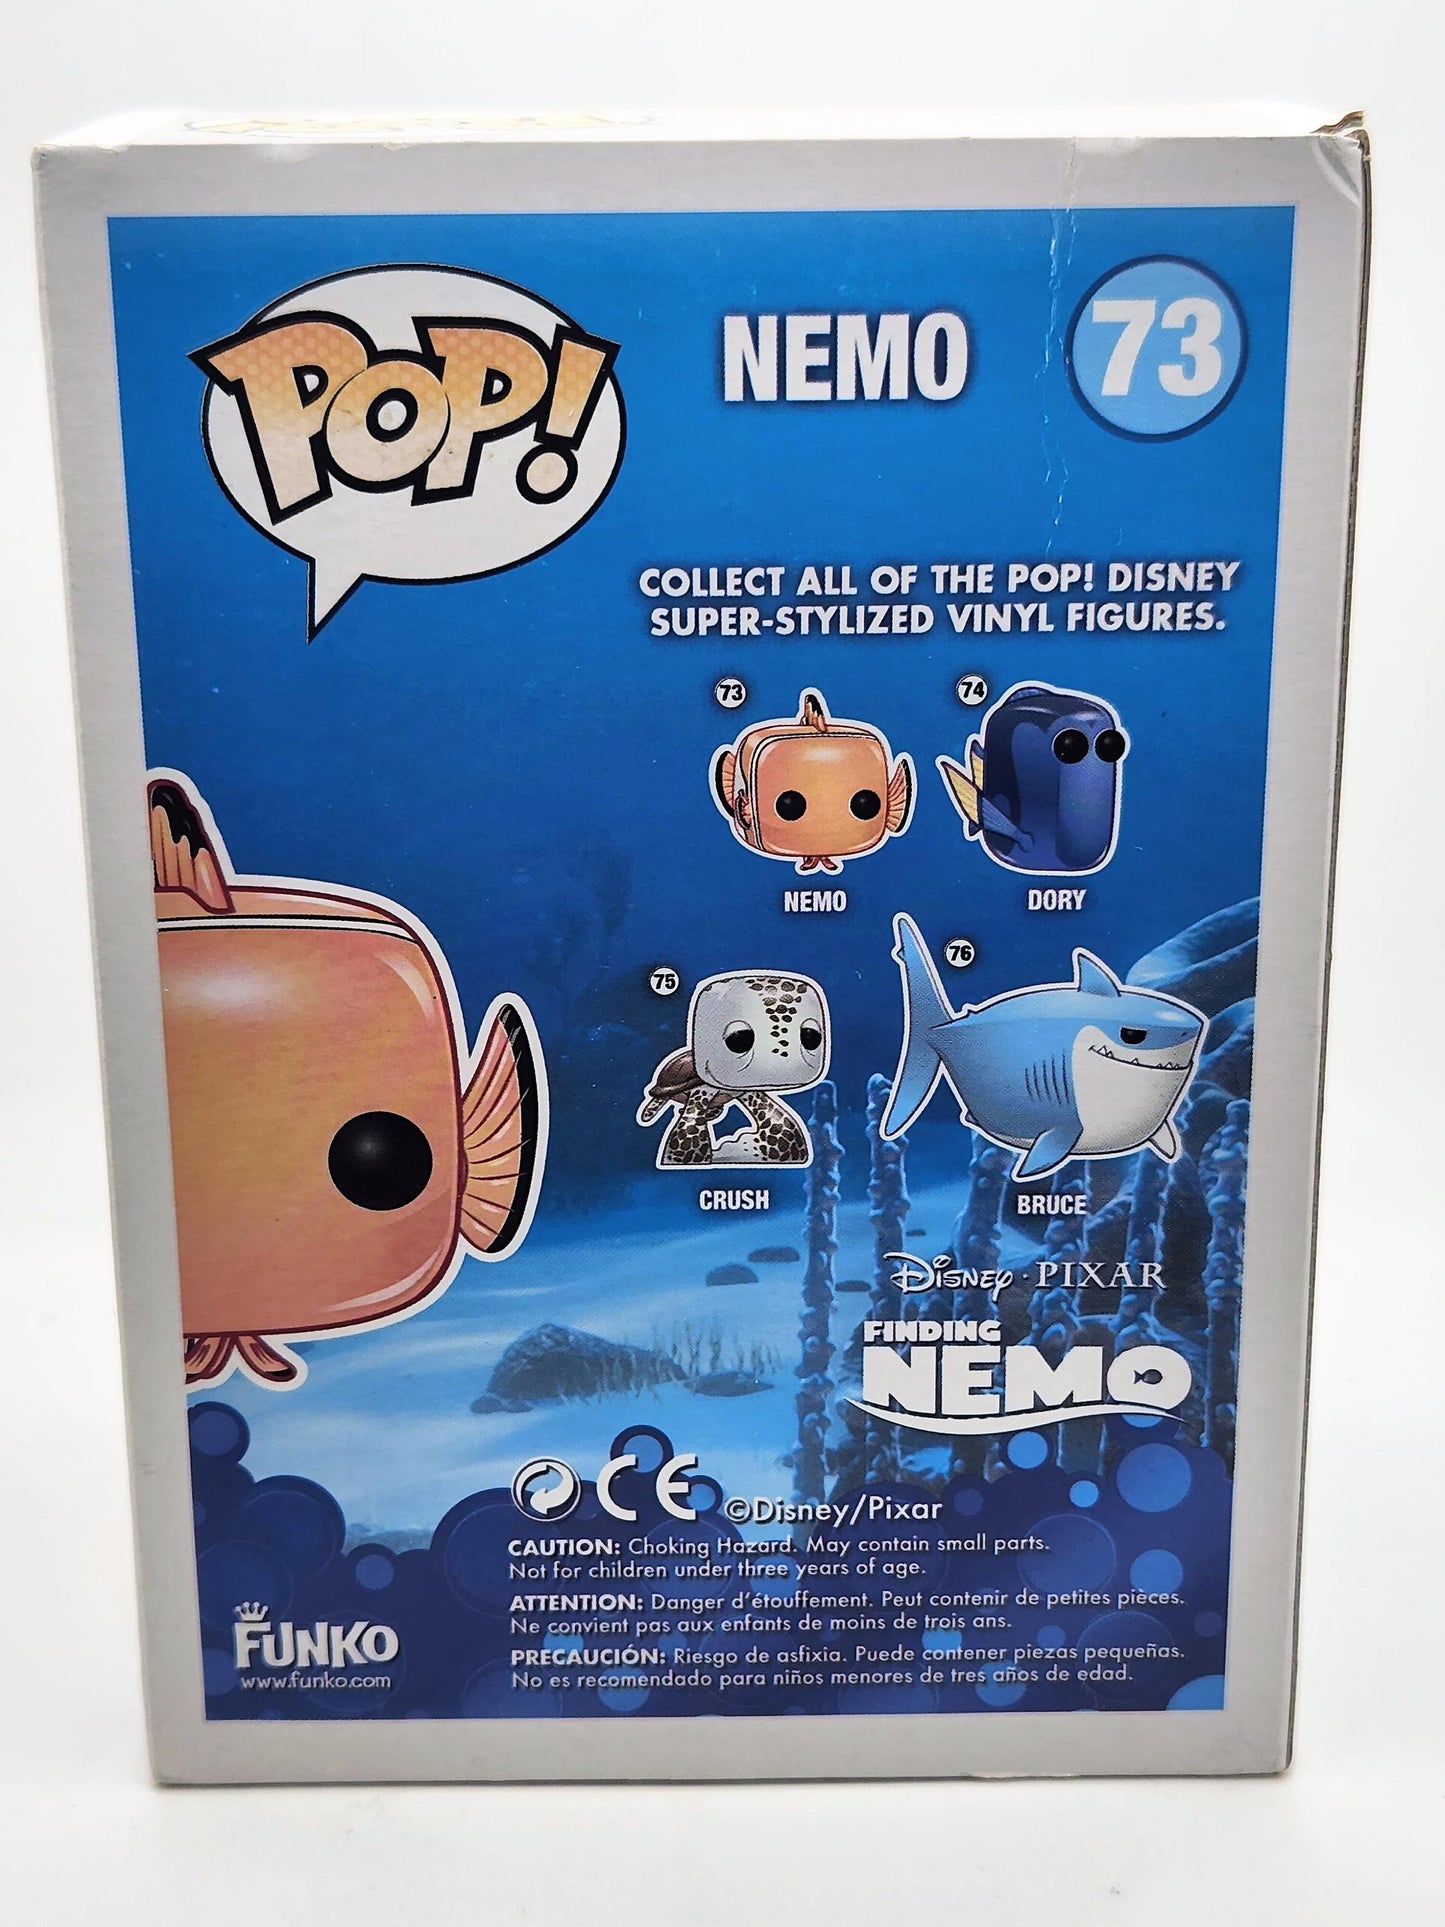 Nemo - #73 - Box Condition 8/10 -